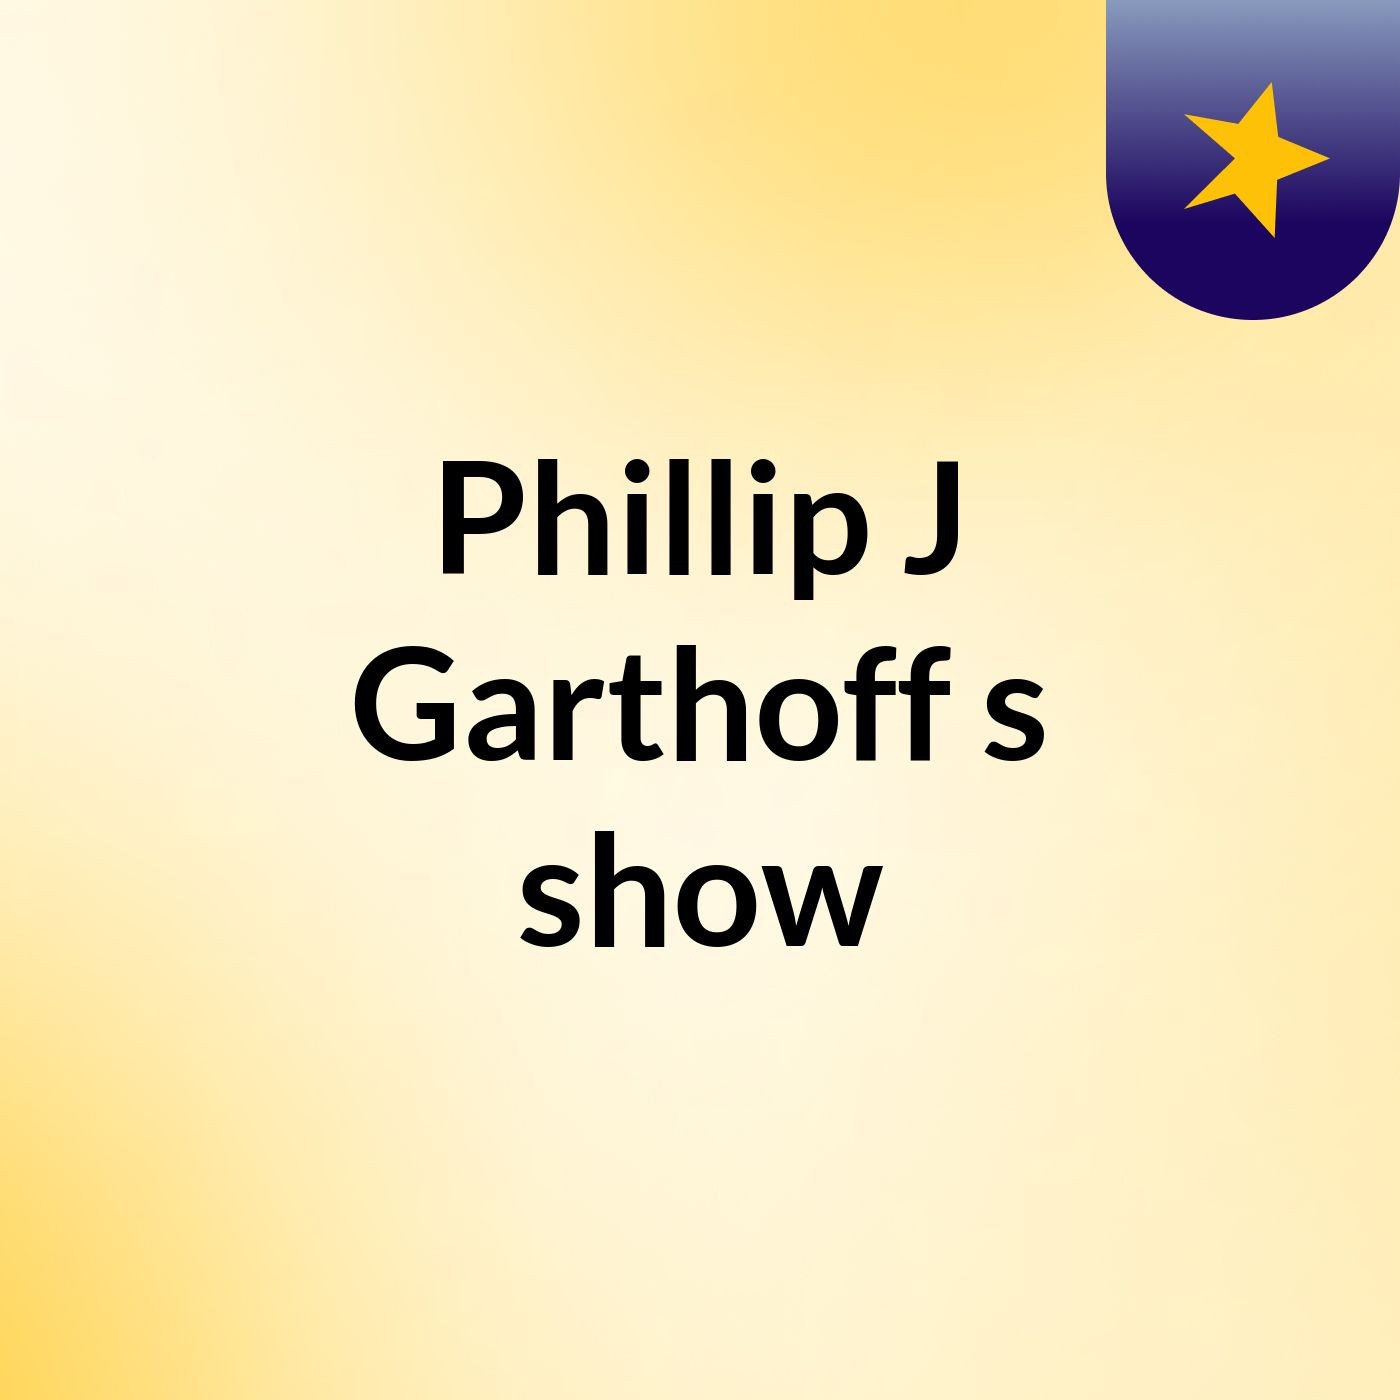 Episode 15 - Phillip J Garthoff's show